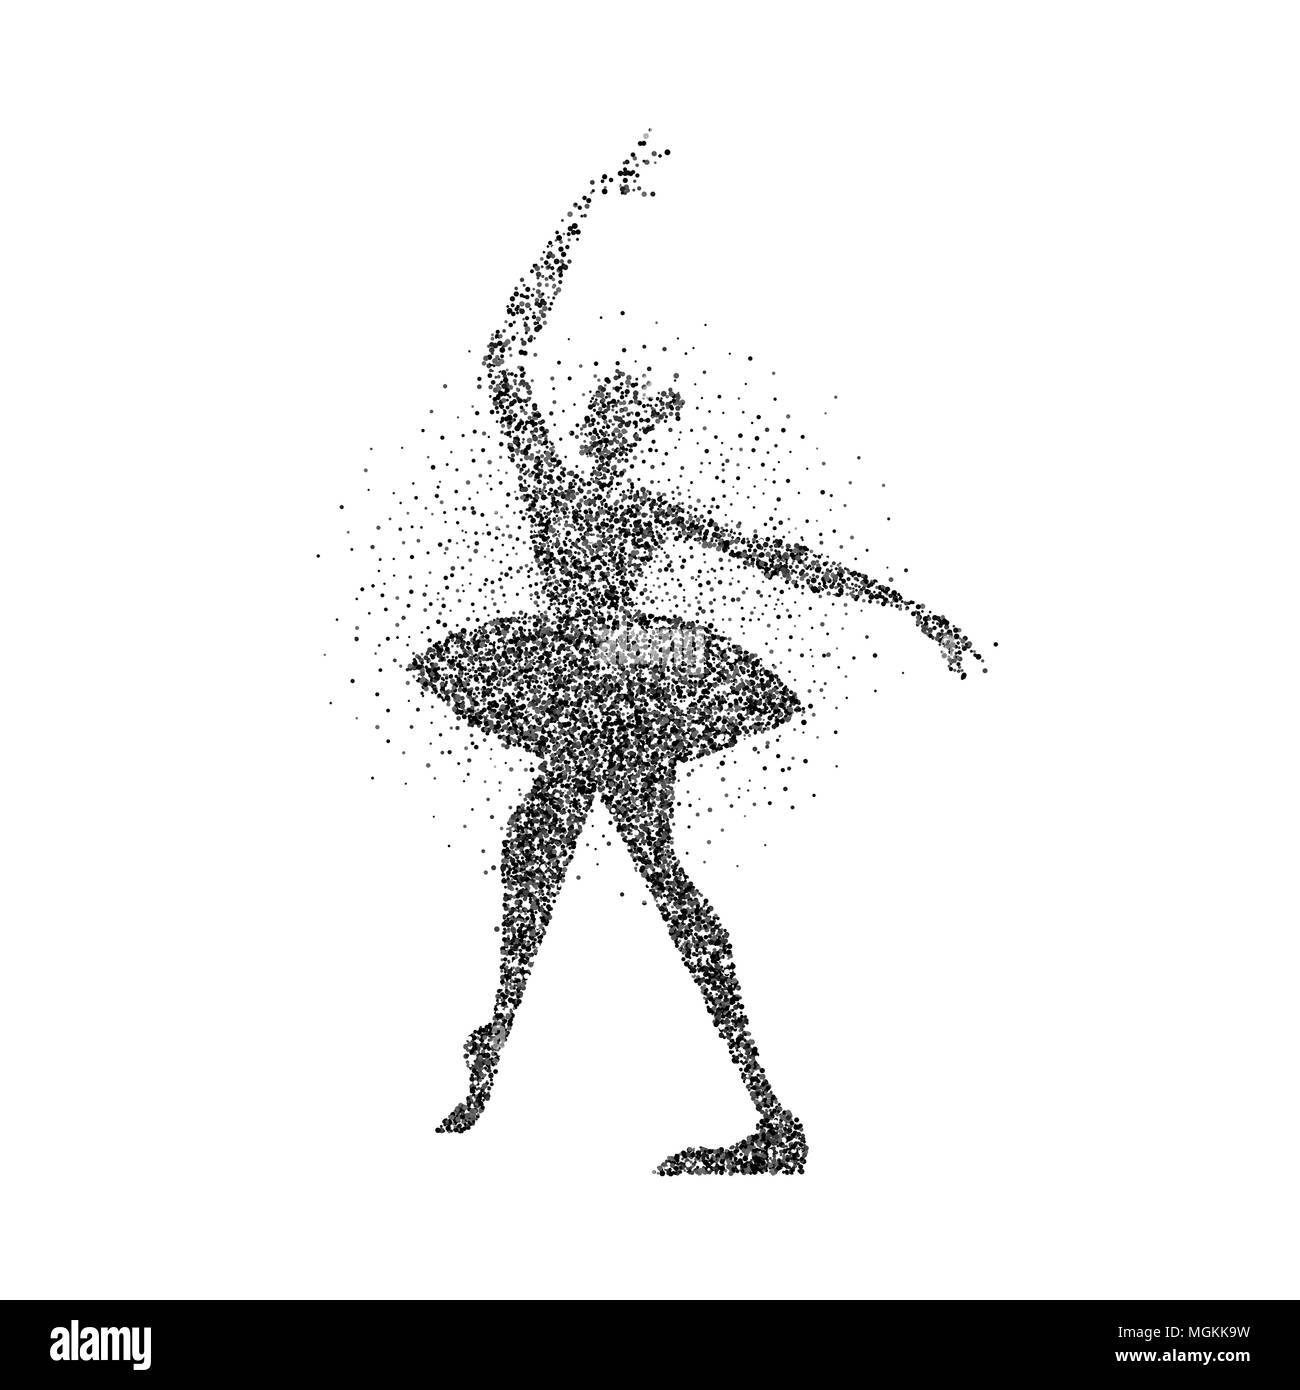 Fille danse ballet classique silhouette faite de panneaux de particules - aggloméré splash. Danseuse ballerine posent en mouvement. Vecteur EPS10. Illustration de Vecteur